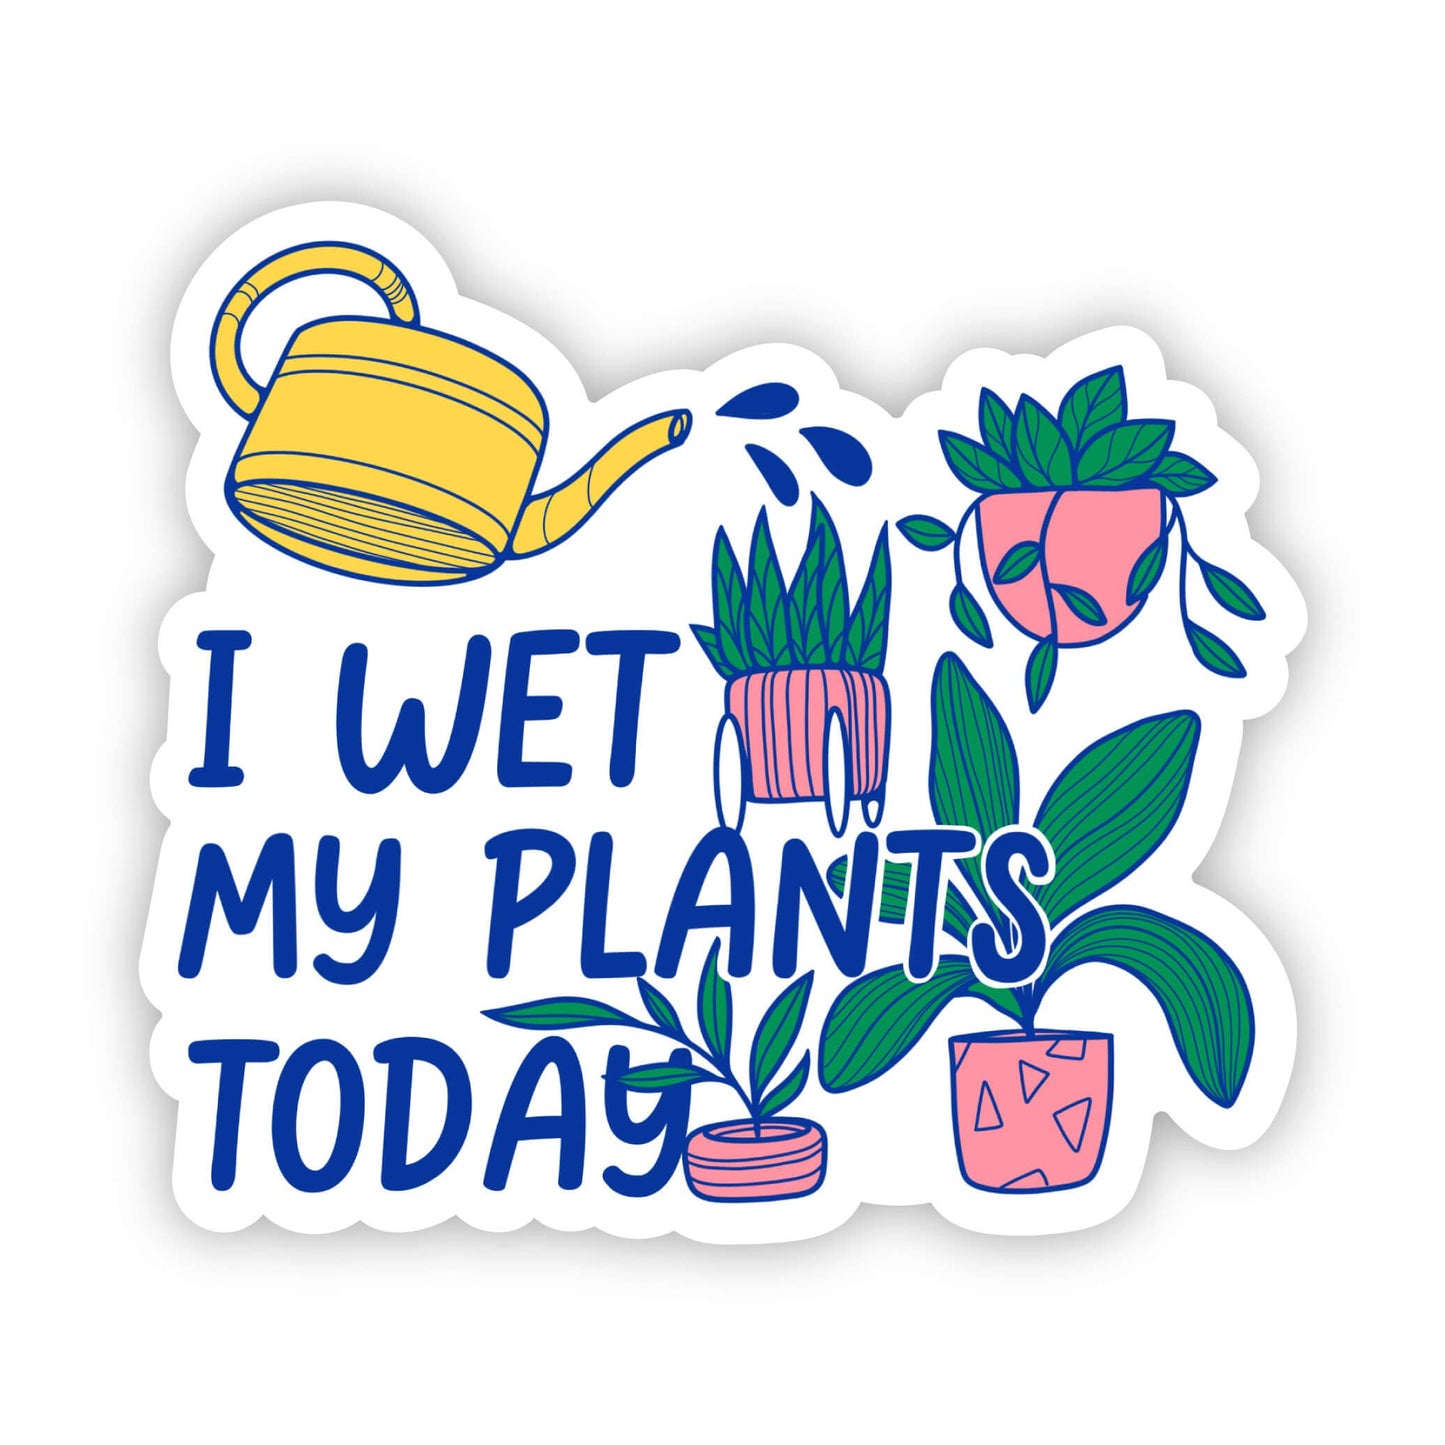 I Wet My Plants Today Sticker